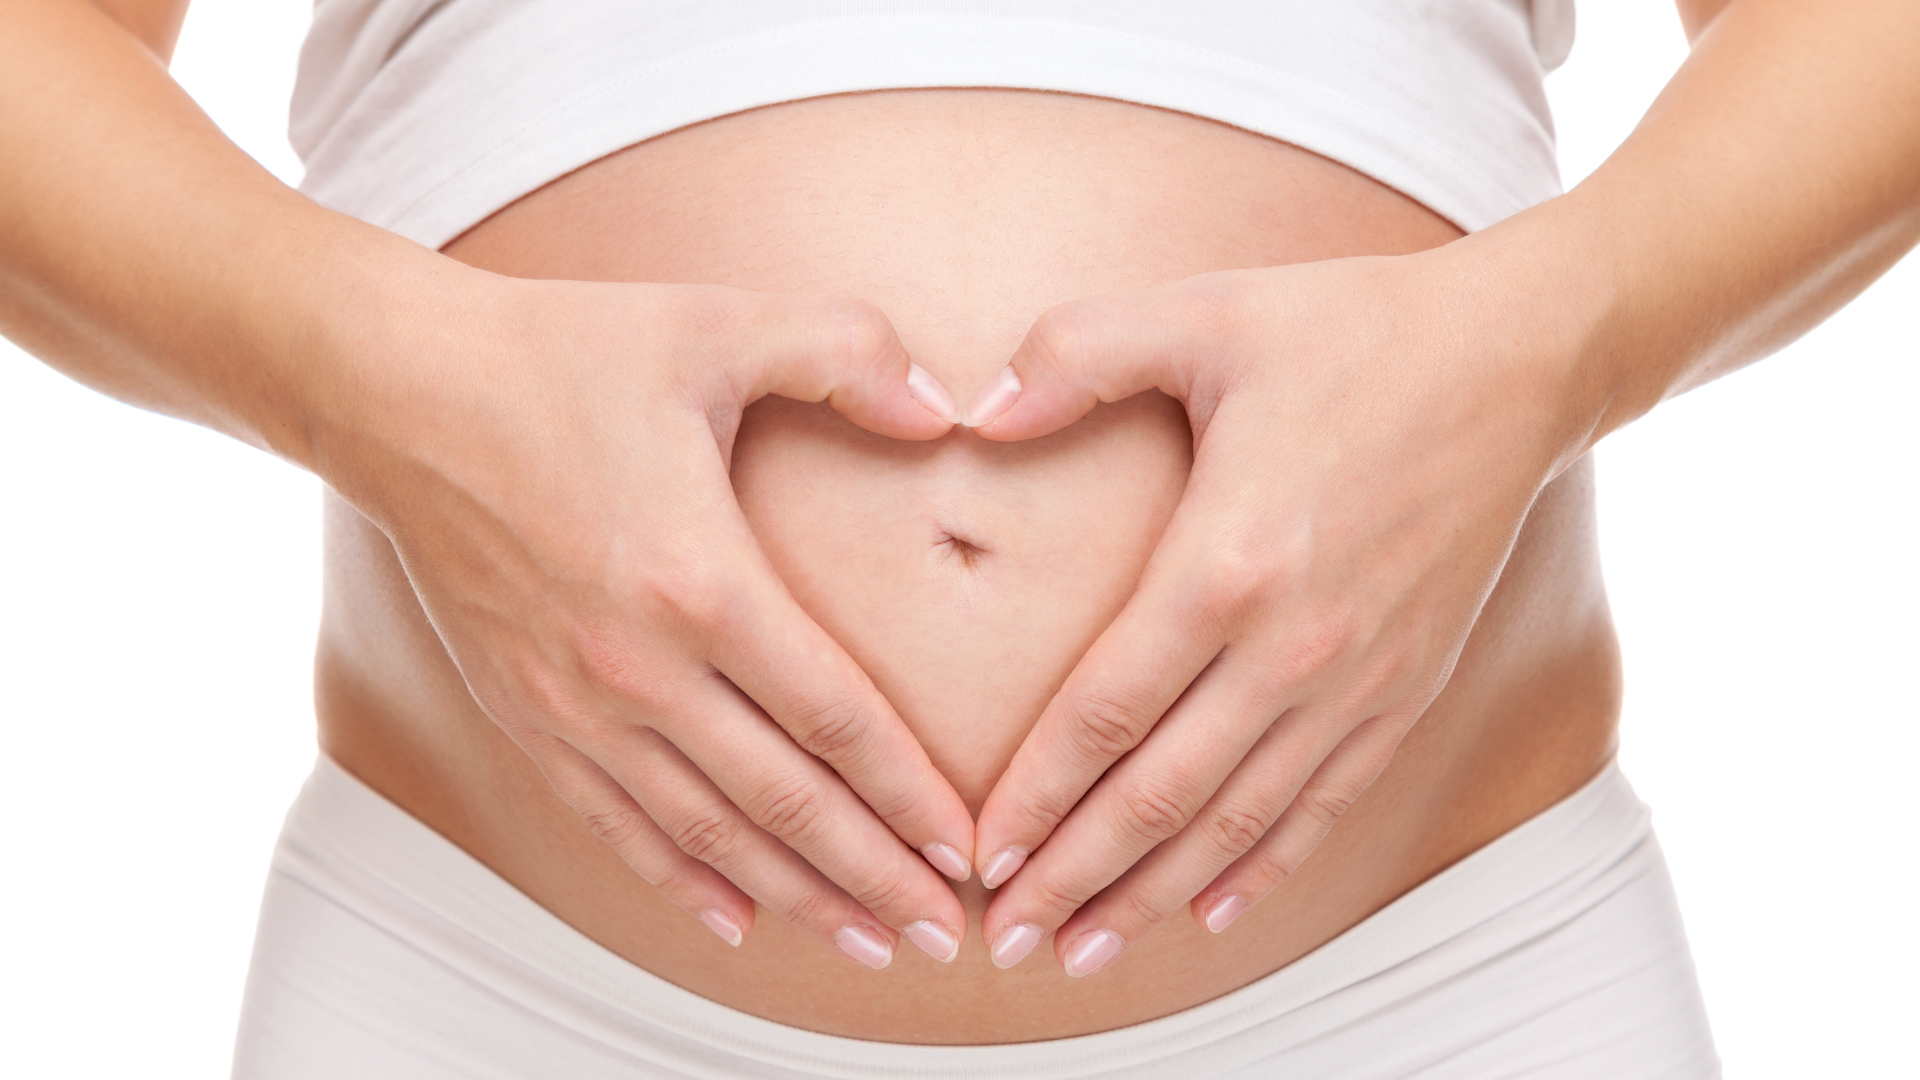 Du betrachtest gerade Akupunktur in der Schwangerschaft: Eine ganzheitliche Unterstützung für werdende Mütter